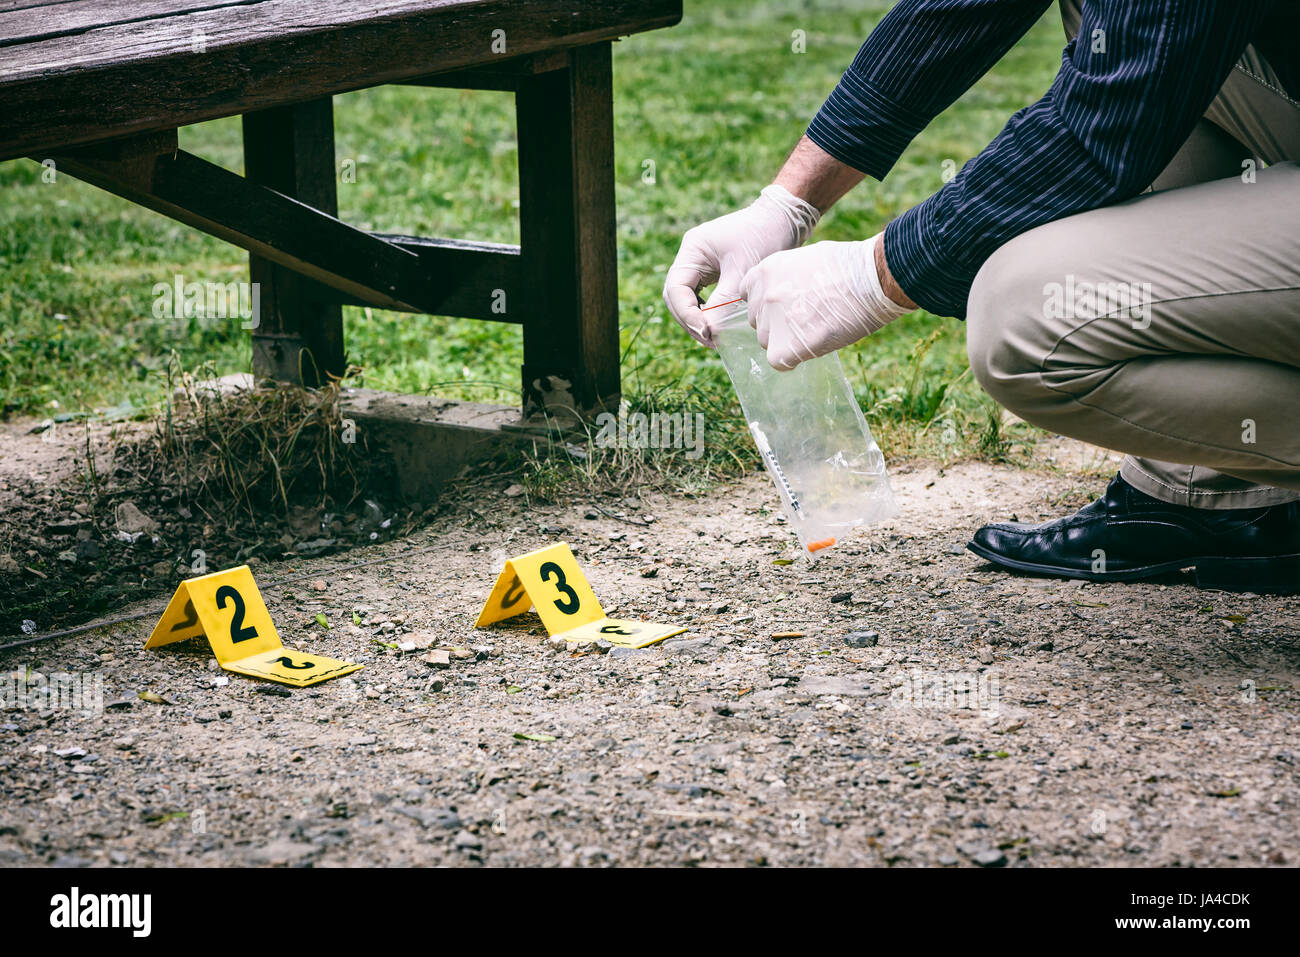 Crime scene investigation Stock Photo